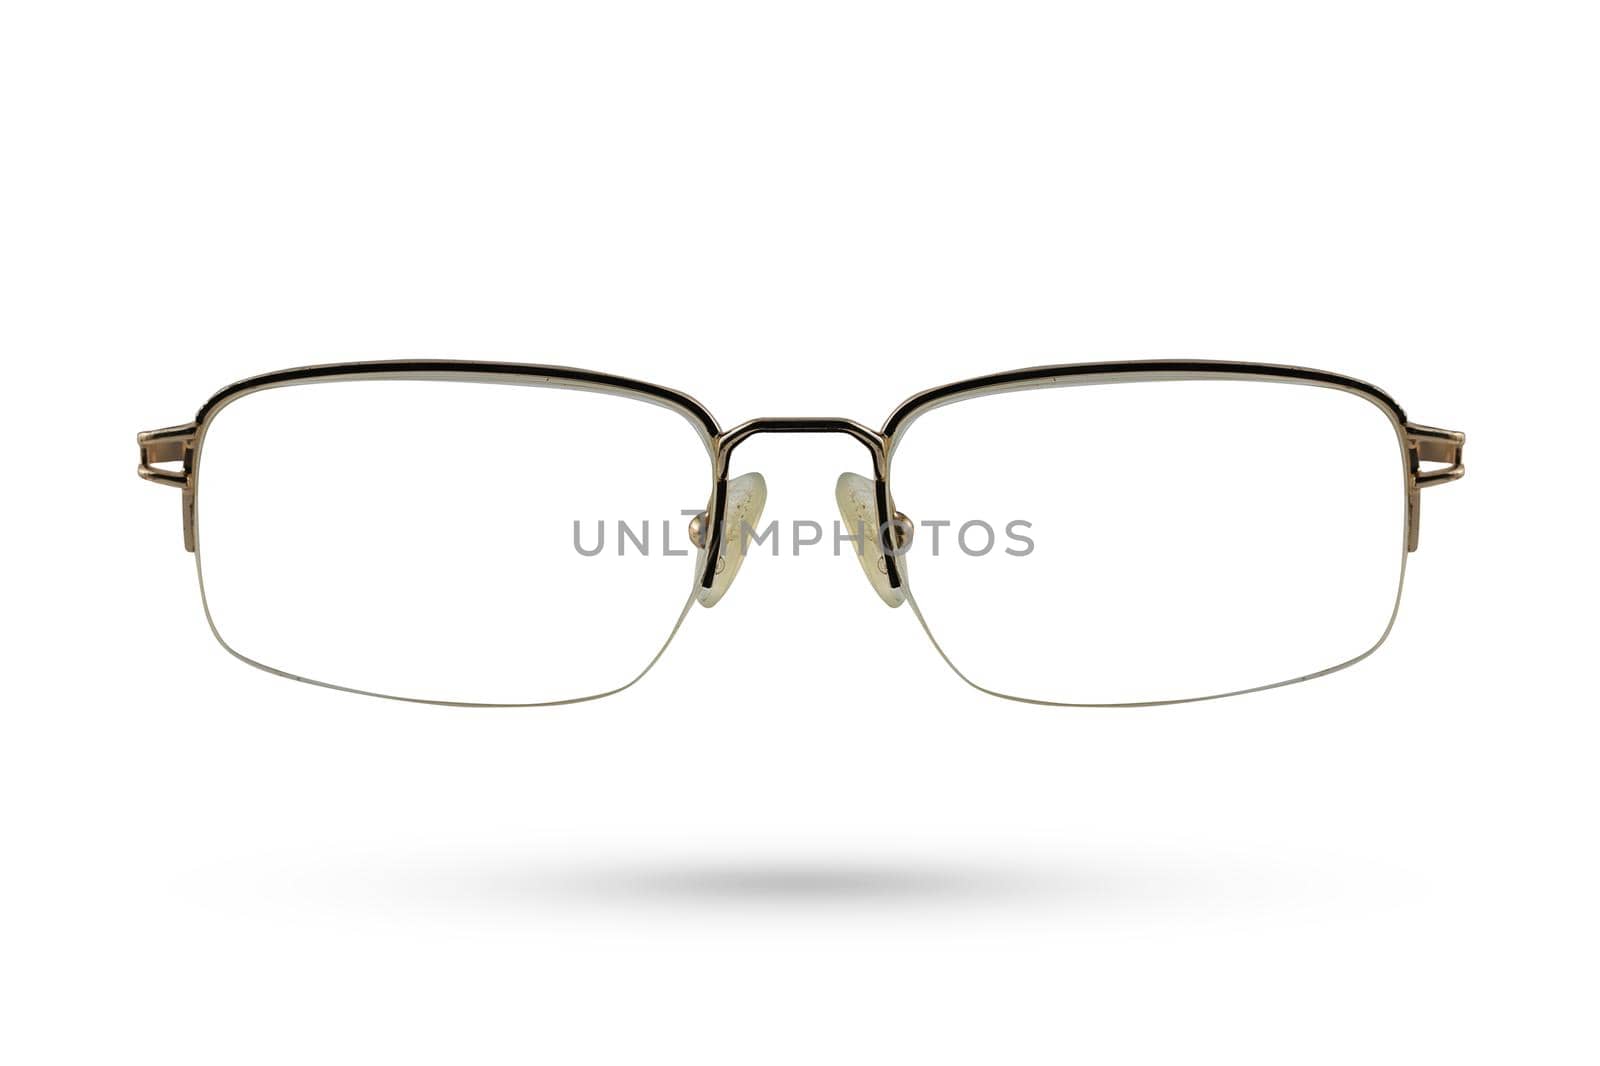 Classic Fashion eyeglasses style isolated on white background.